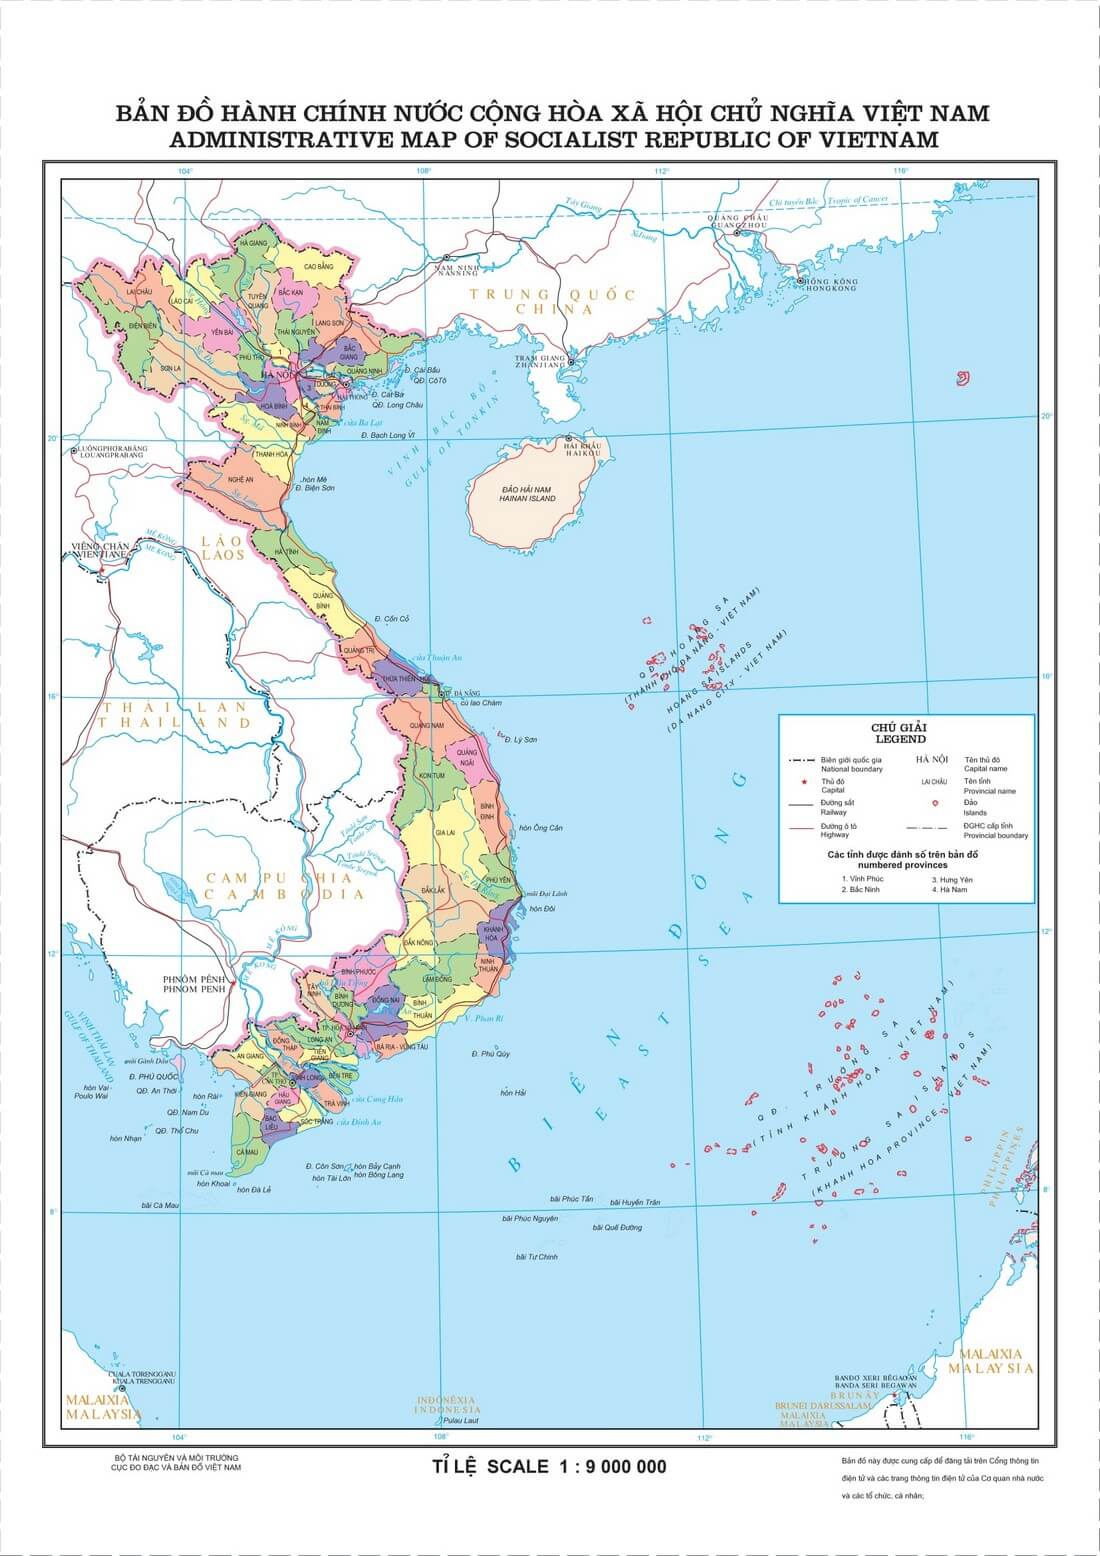 Cập nhật bản đồ hành chính tỉnh thành Việt Nam năm 2024 để biết được sự thay đổi về đường giao thông và cơ sở hạ tầng. Hãy khám phá những địa điểm du lịch mới và cập nhật để có một kỳ nghỉ tuyệt vời ở Việt Nam.